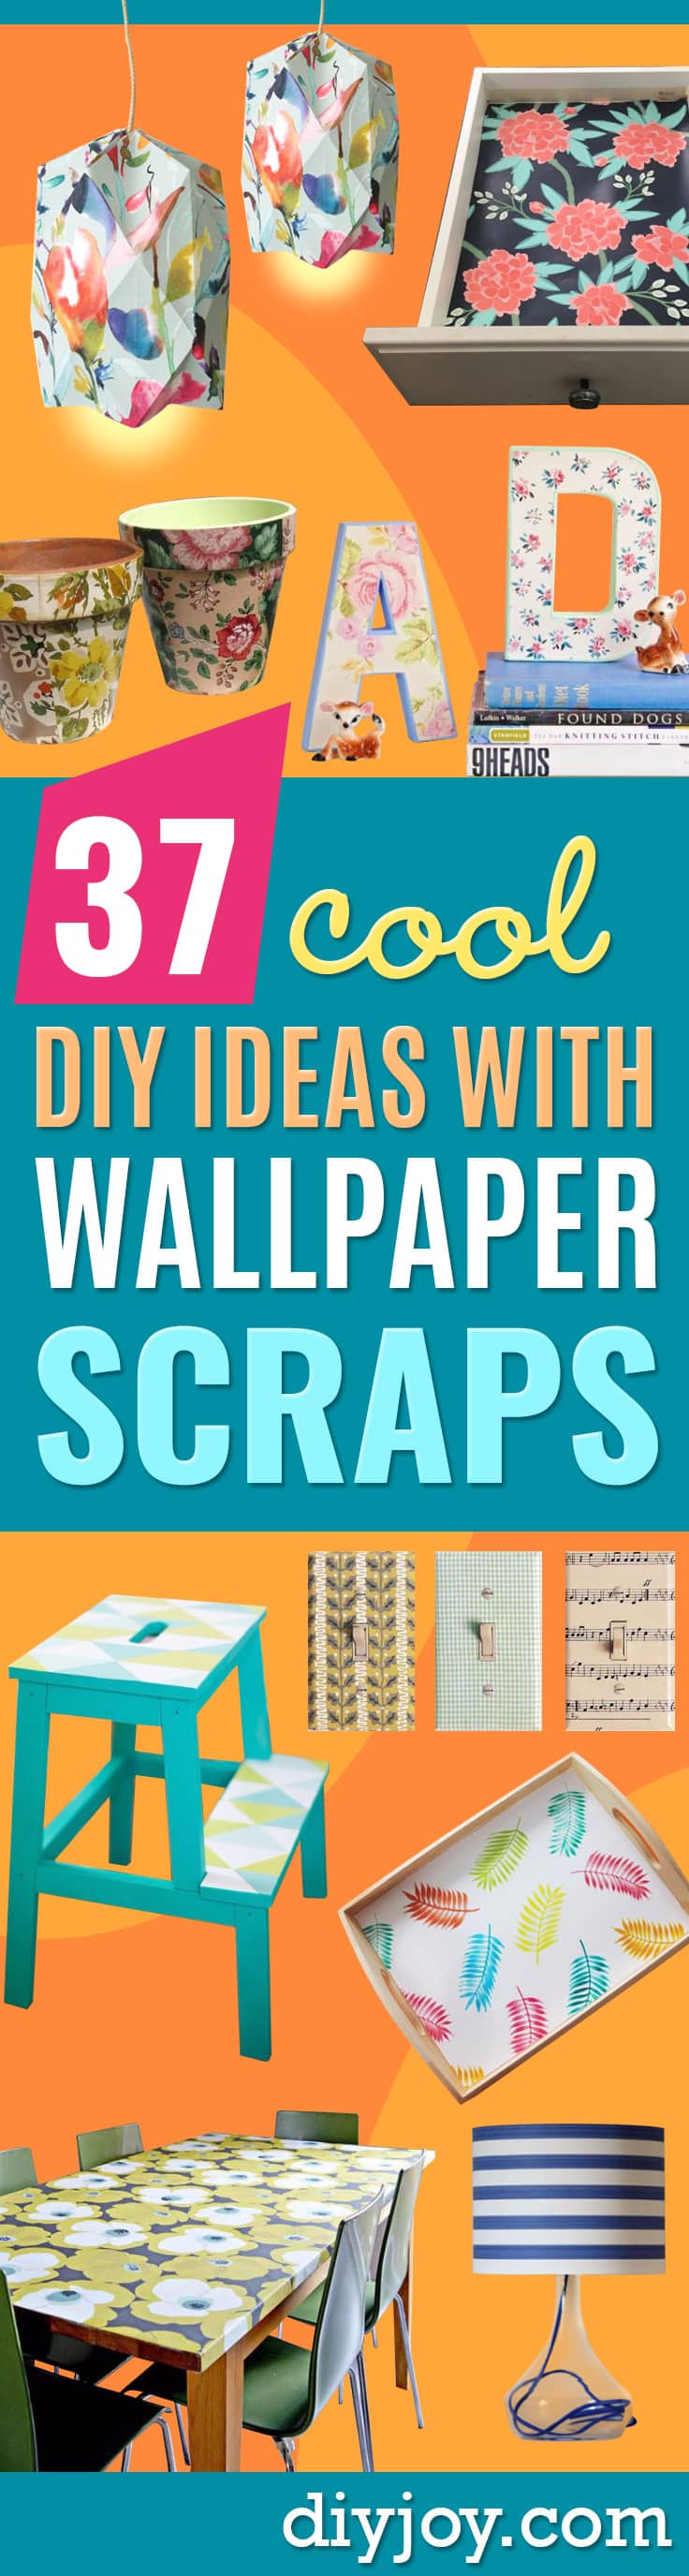 37 Diy Ideas With Wallpaper Scraps HD Wallpapers Download Free Images Wallpaper [wallpaper981.blogspot.com]